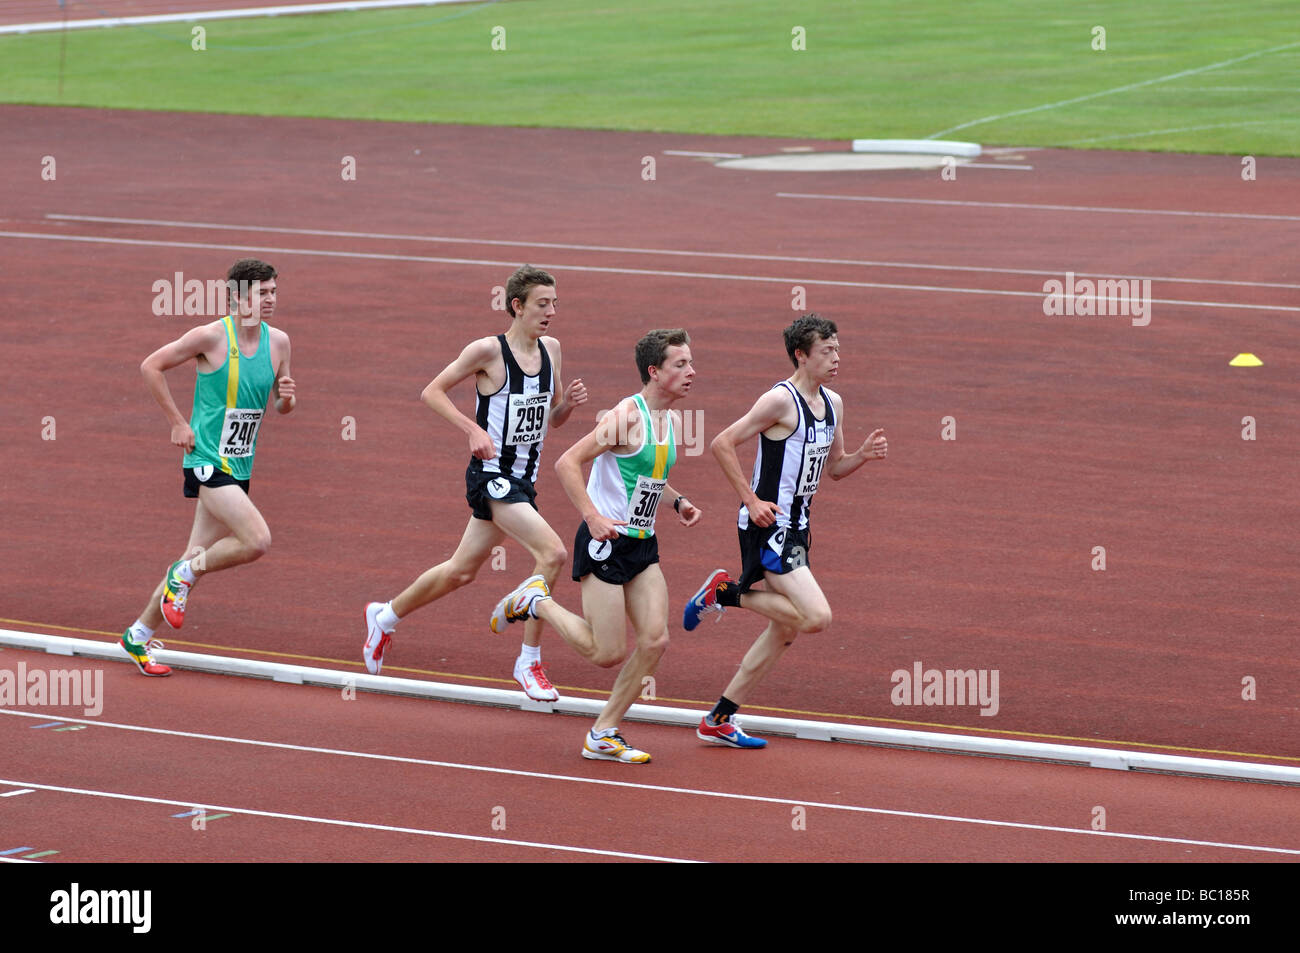 Los corredores en una carrera de distancia media, REINO UNIDO Foto de stock